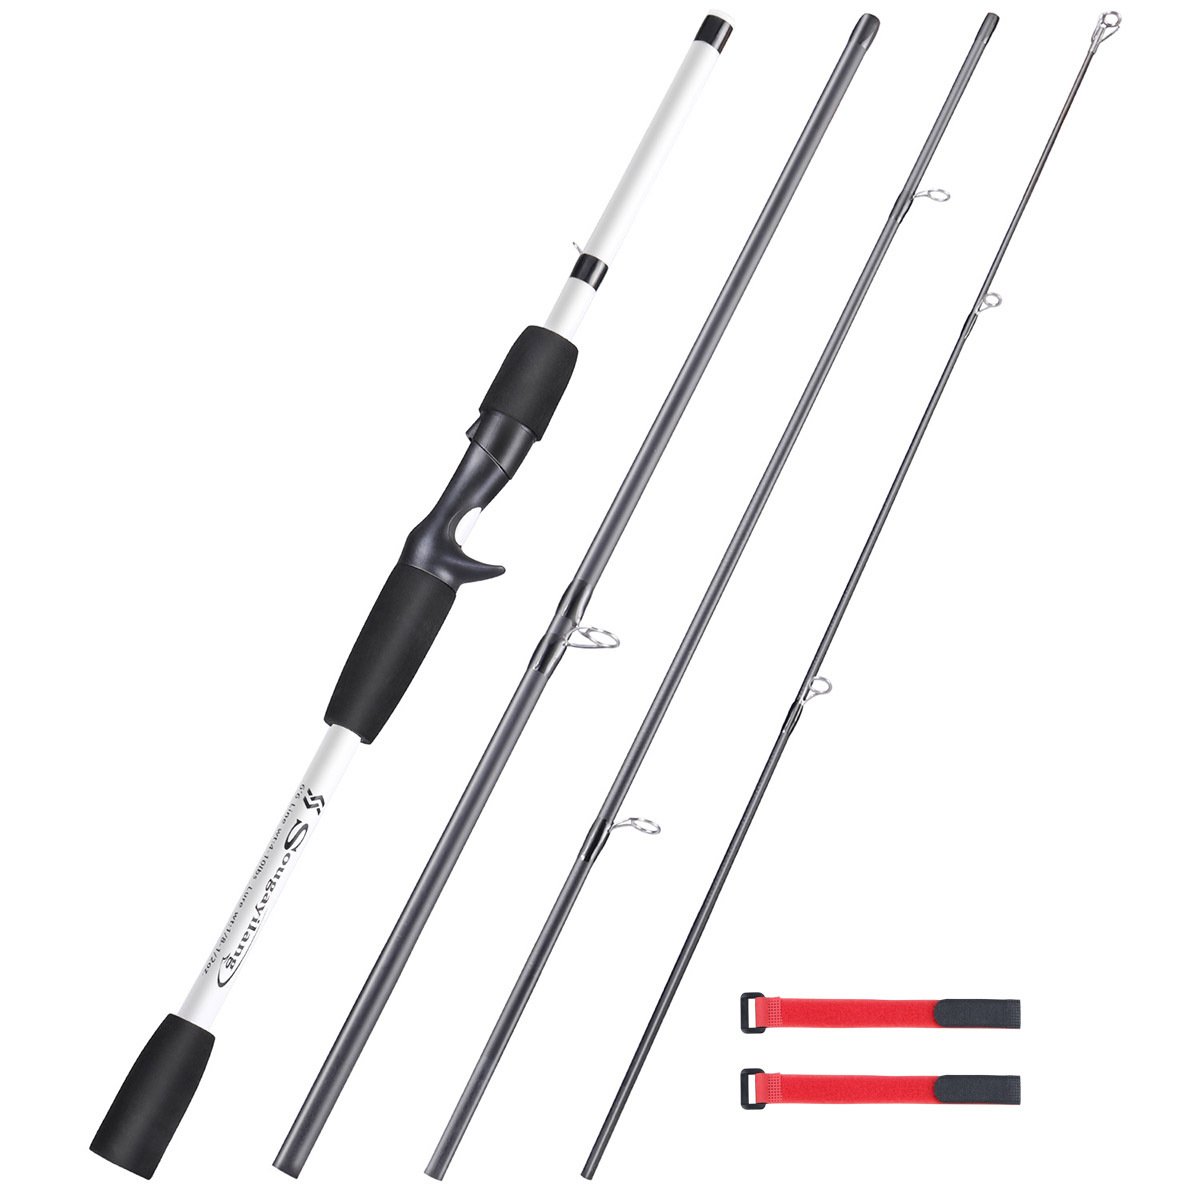 Sougayilang 4 Section Fiberglass Fishing Rod, 6.5ft/198cm Spinning/Casting  Rod For Freshwater [ For Beginner ]